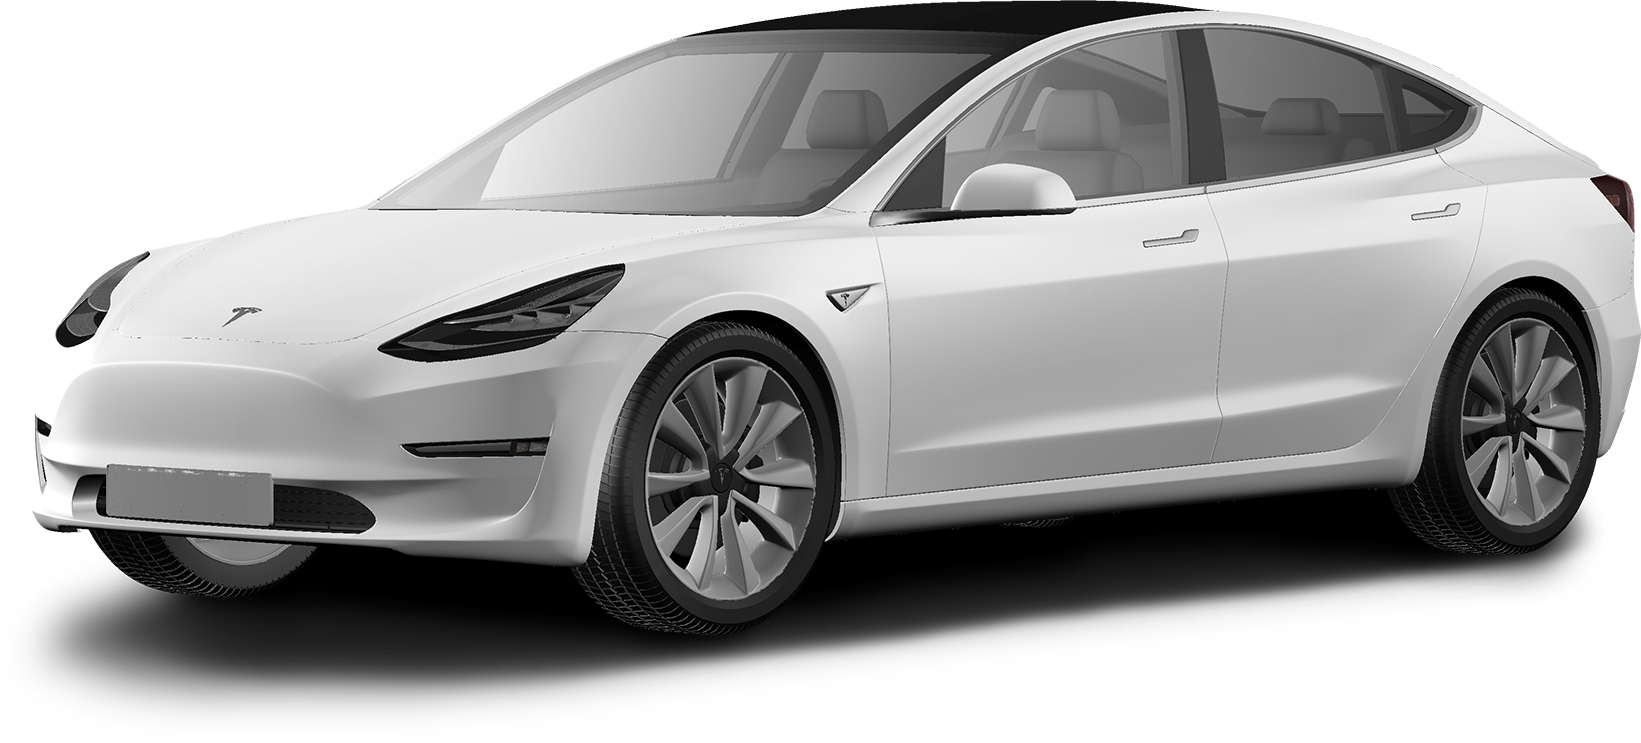 Tesla vehicle